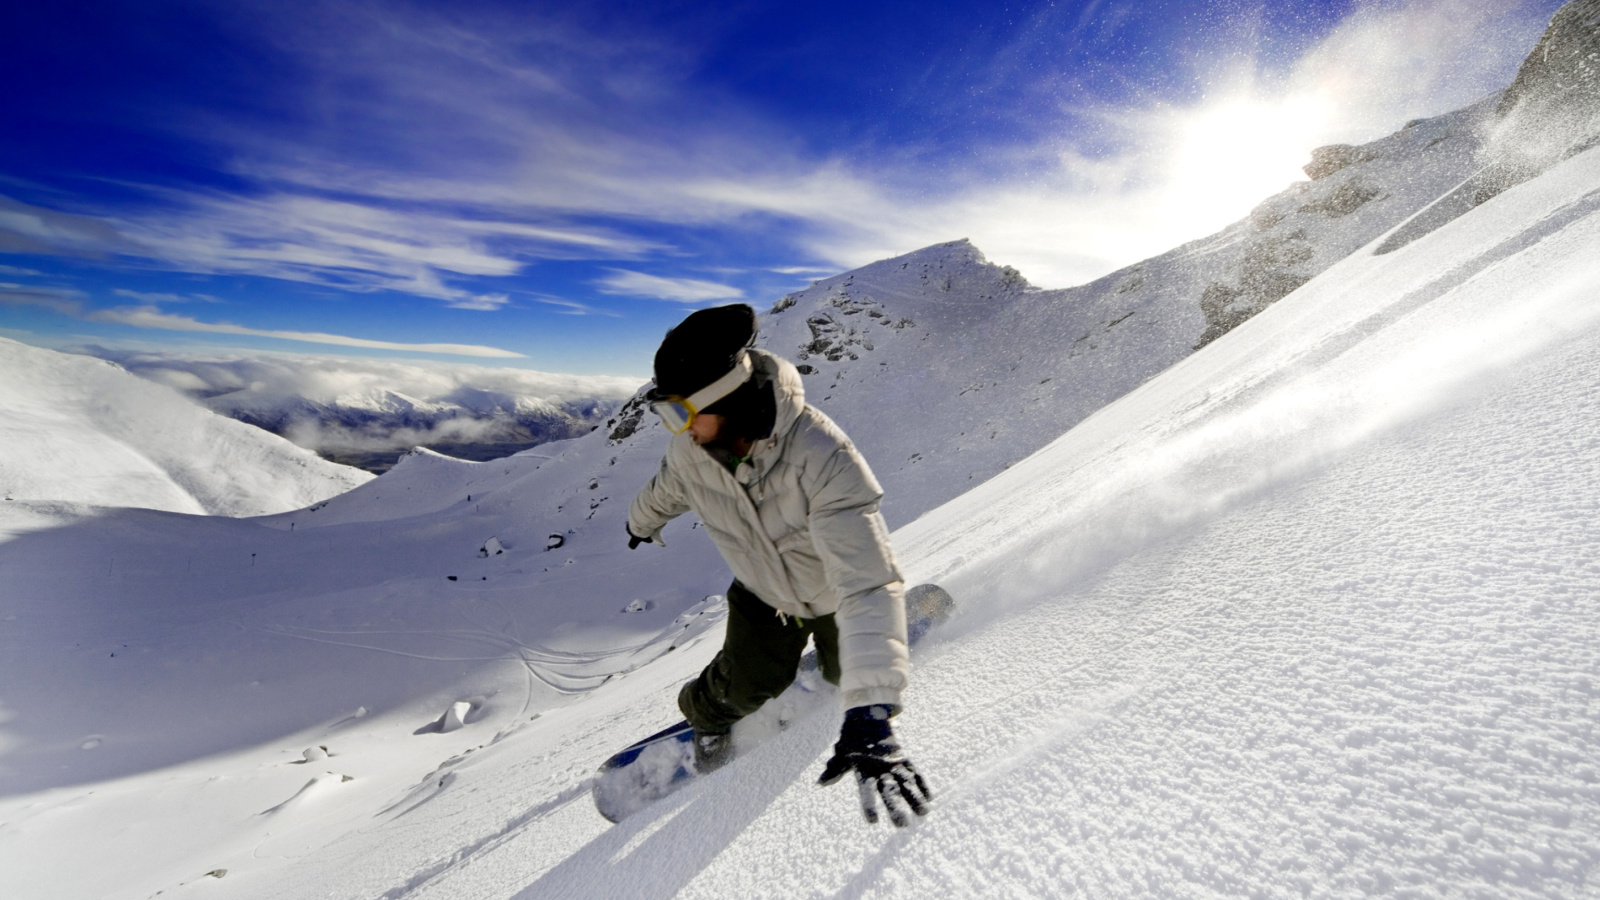 Outdoor activities as Snowboarding wallpaper 1600x900